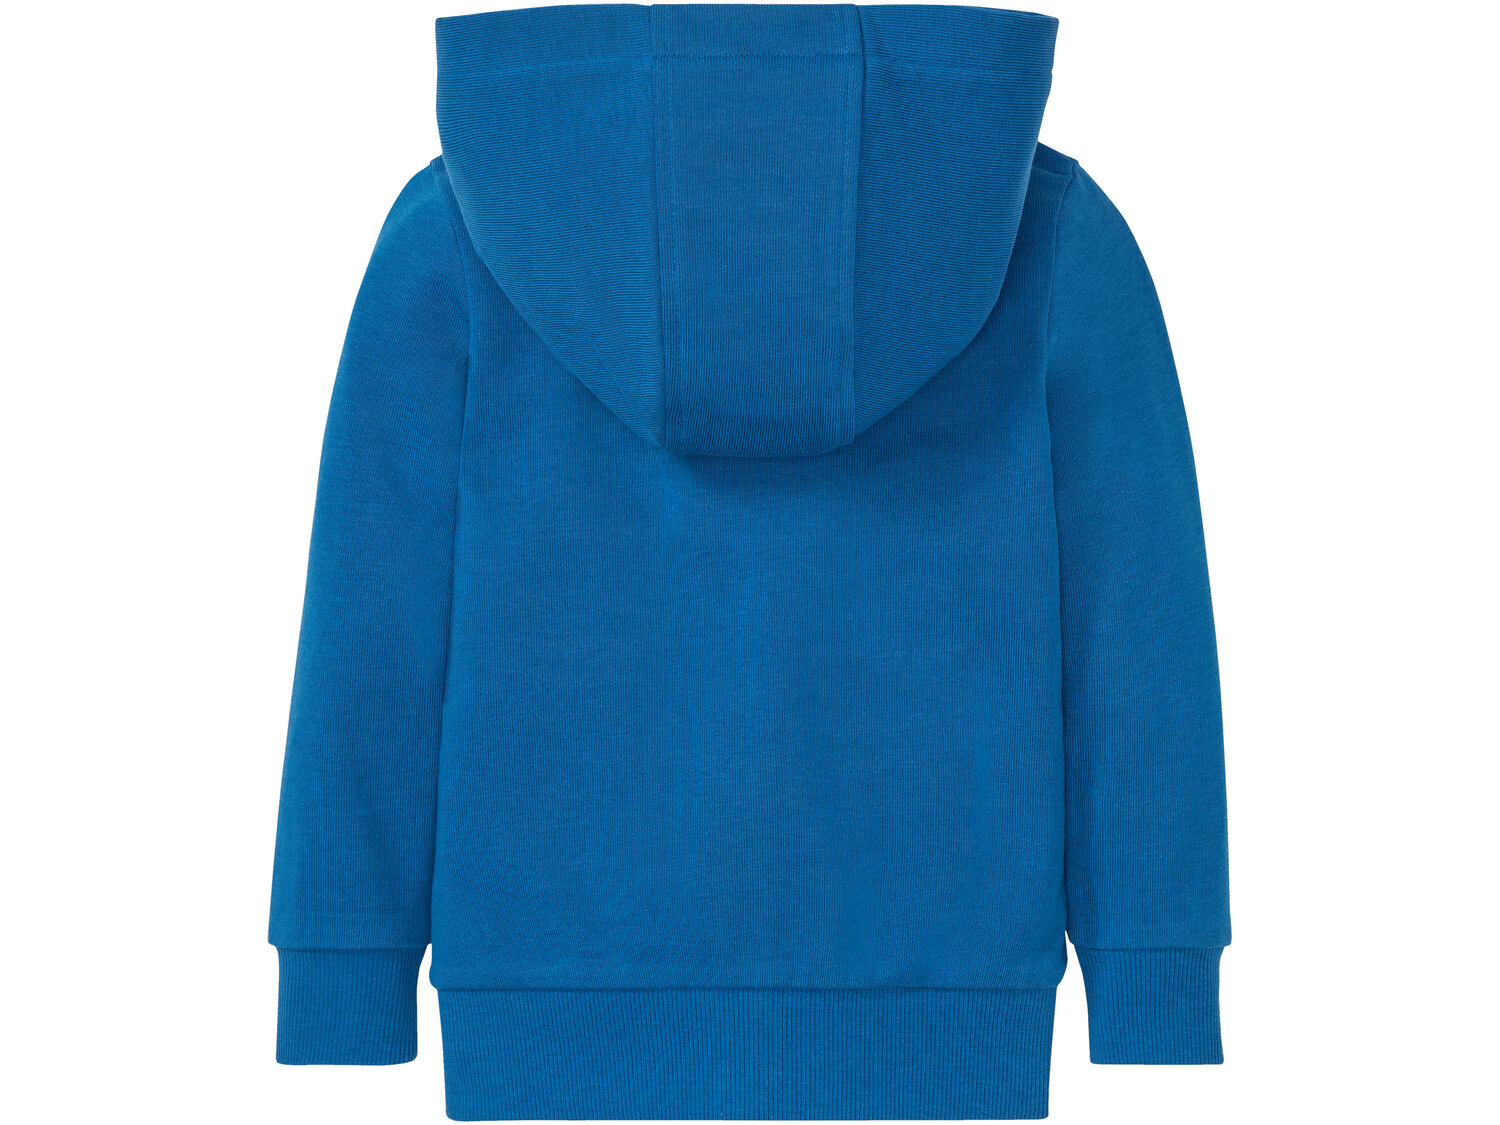 Bluza dresowa chłopięca , cena 24,99 PLN 
- wysoka zawartość bawełny
- rozmiary: ...